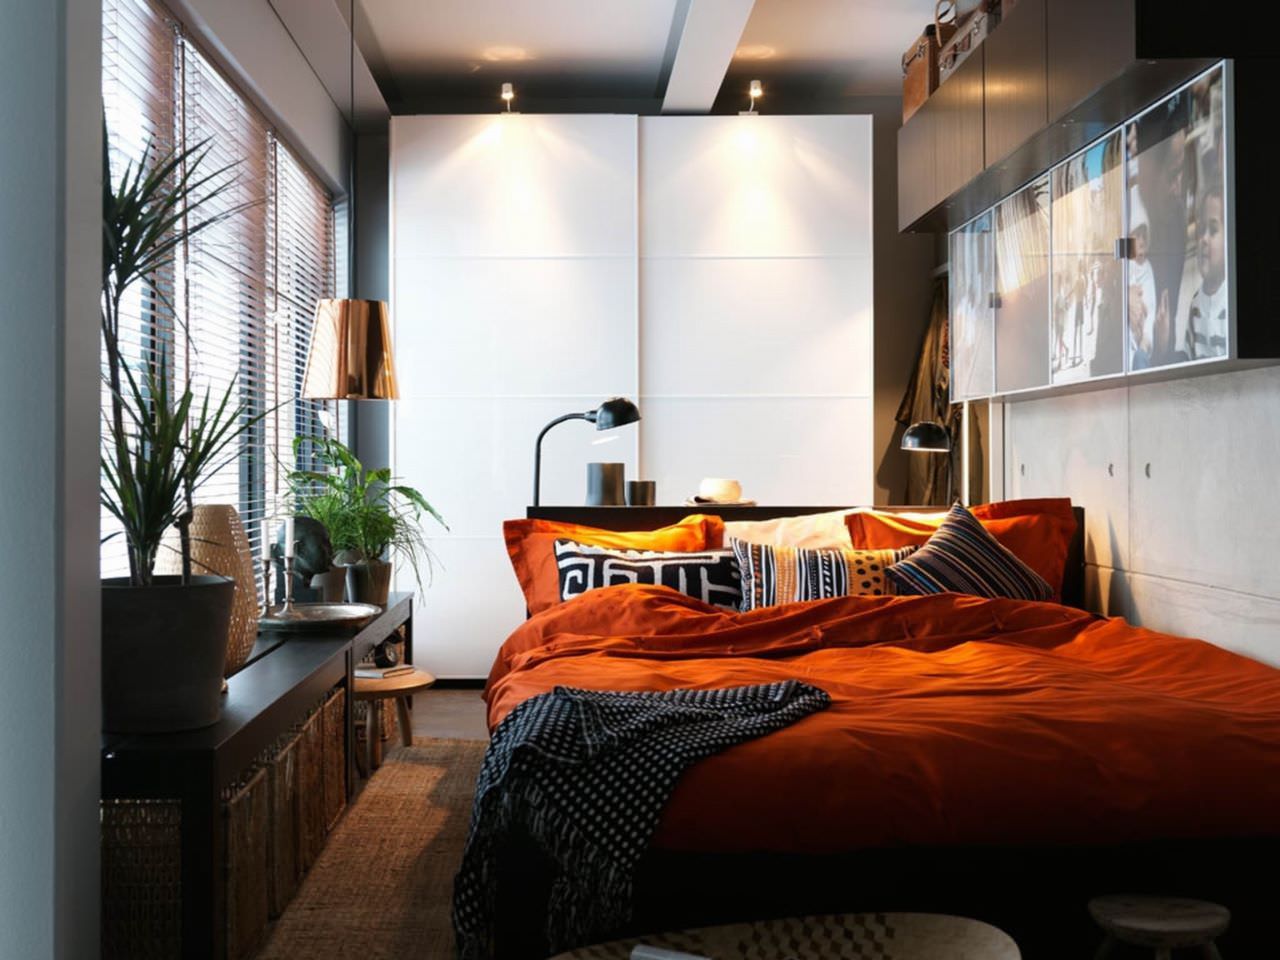 Hình ảnh phòng ngủ đẹp mang phong cách vintage pha lẫn chút hiện đại đem lại sự ấm áp gần gũi